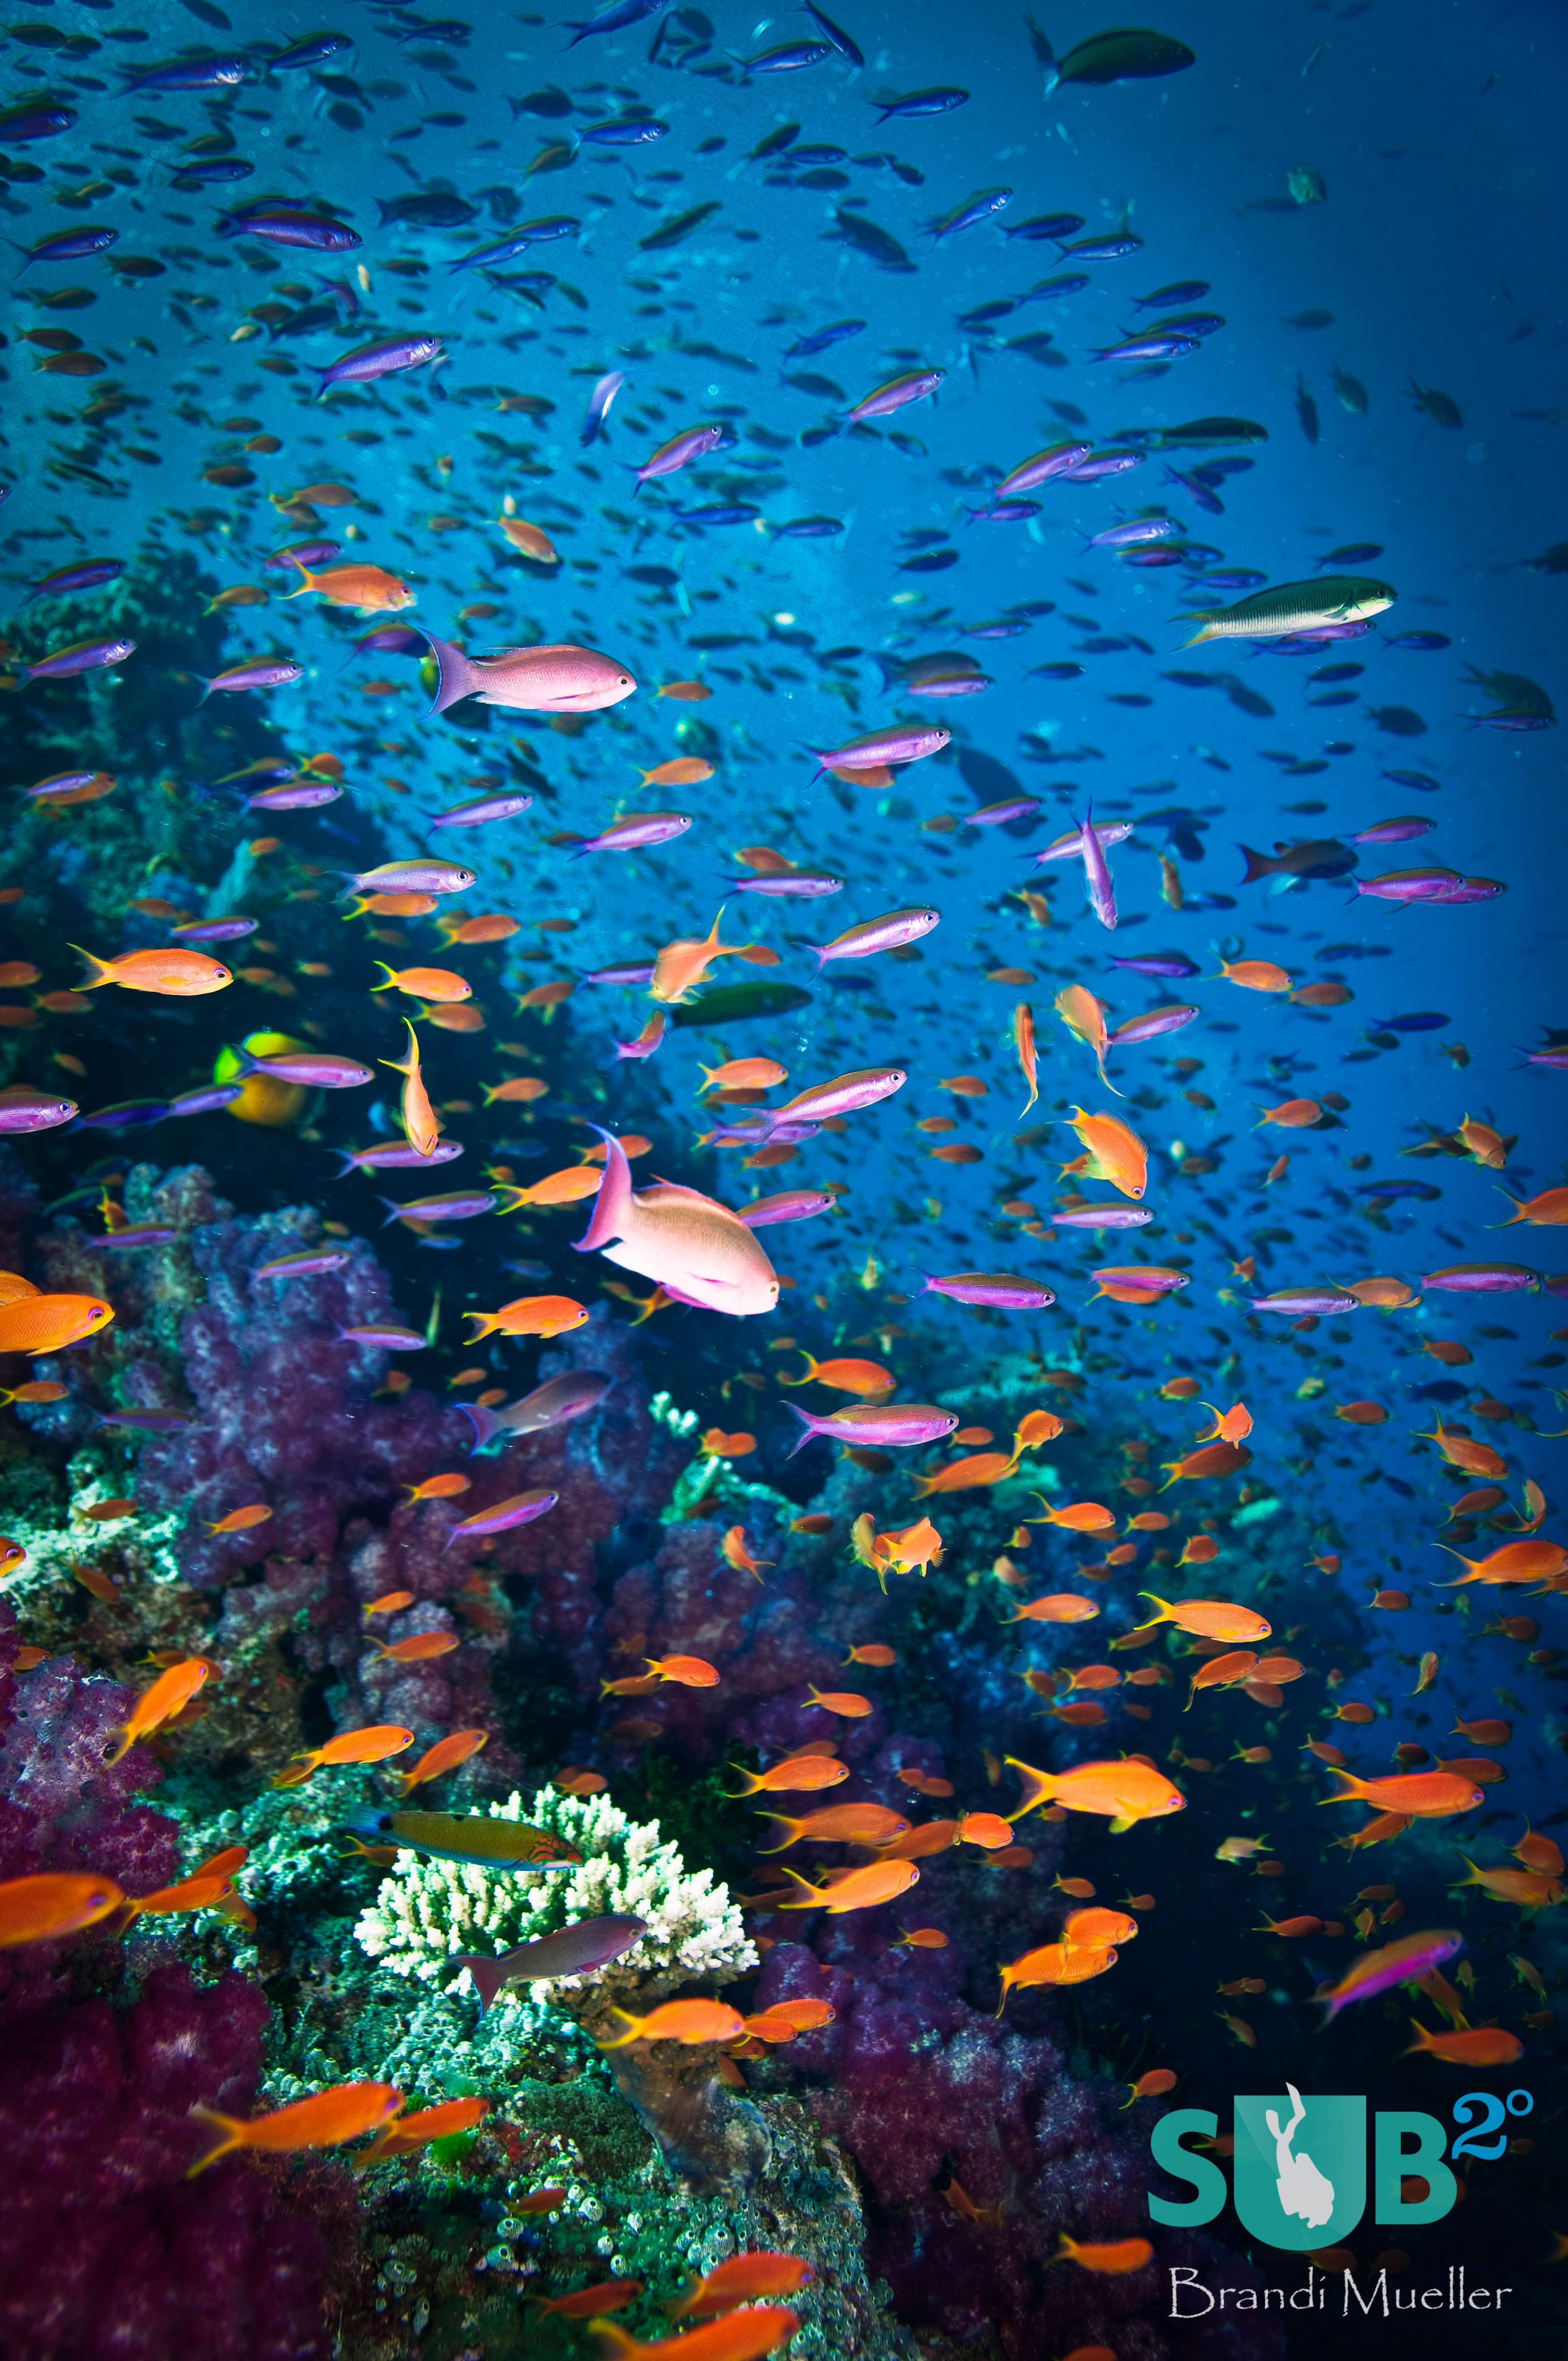 橙色，粉红色，紫色和黄色的Anthias在礁石上飞舞，就像蜂巢上嗡嗡作响的蜜蜂一样。